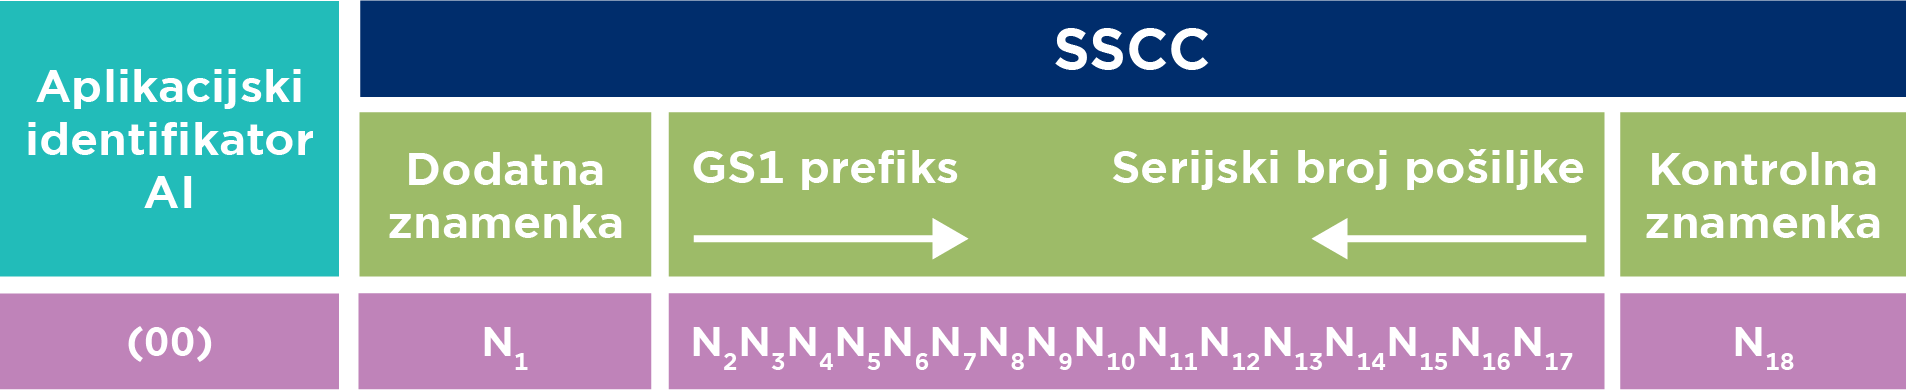 SSCC struktura-01-01.png